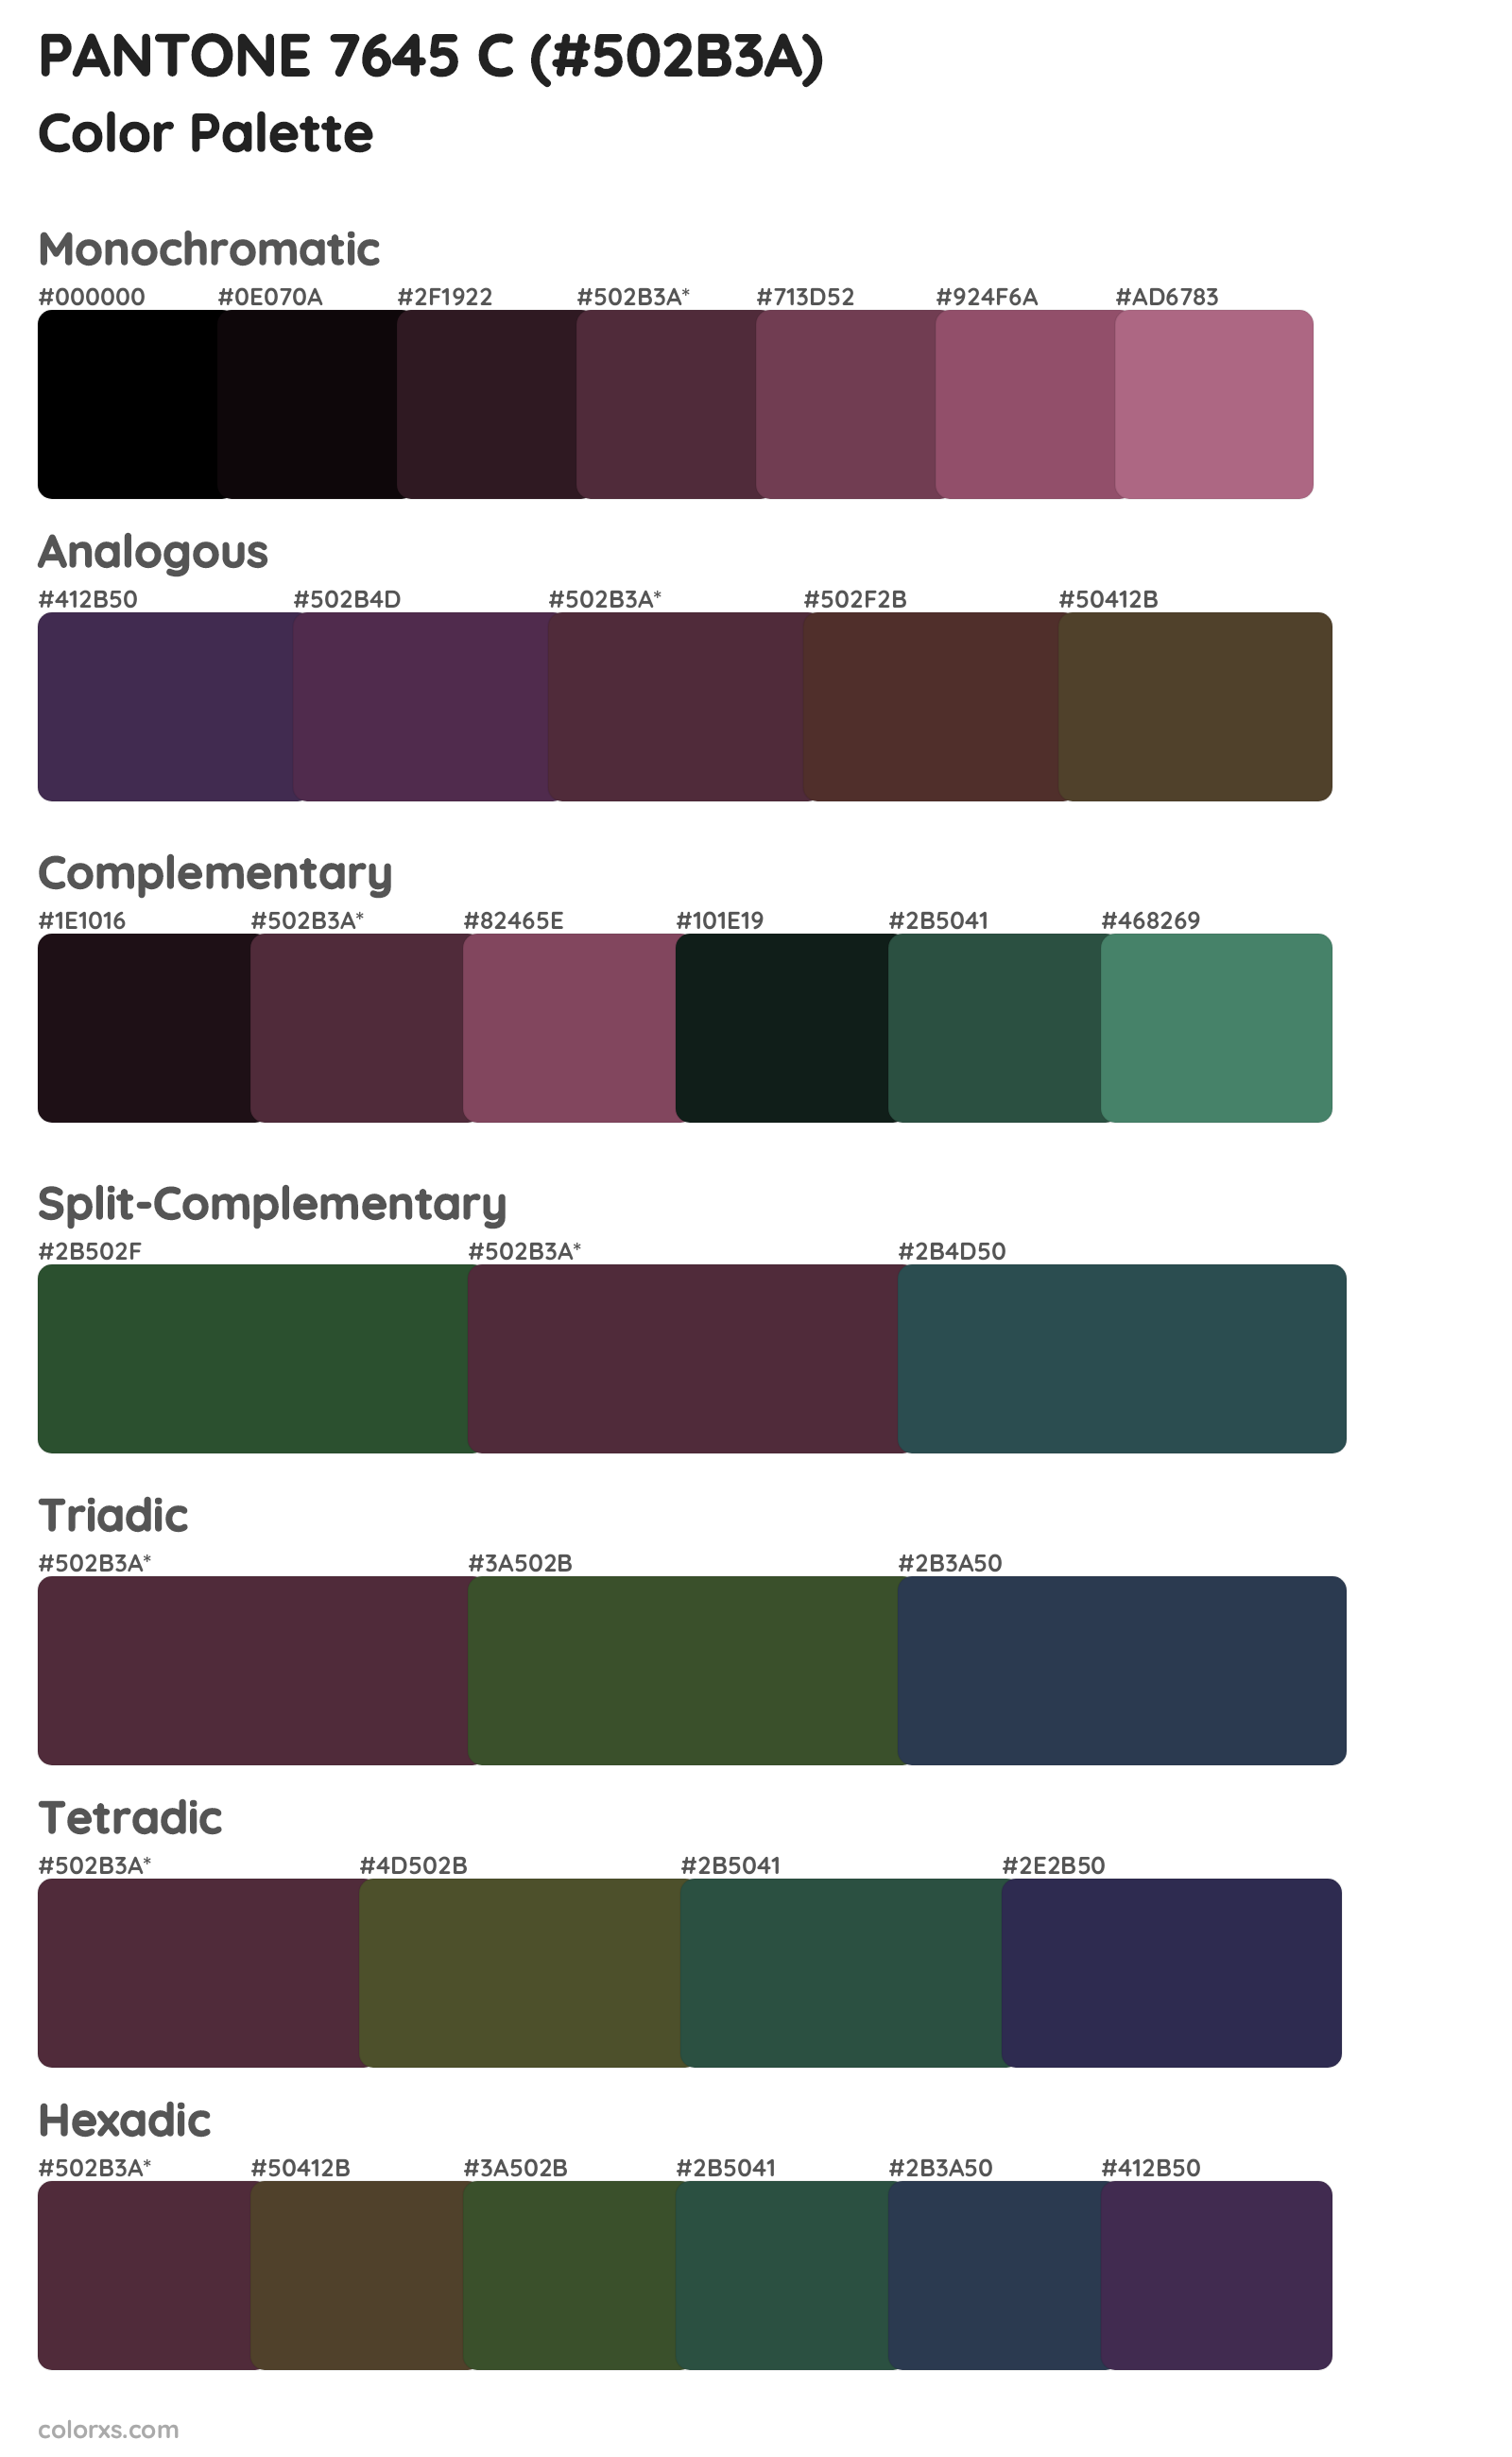 PANTONE 7645 C Color Scheme Palettes